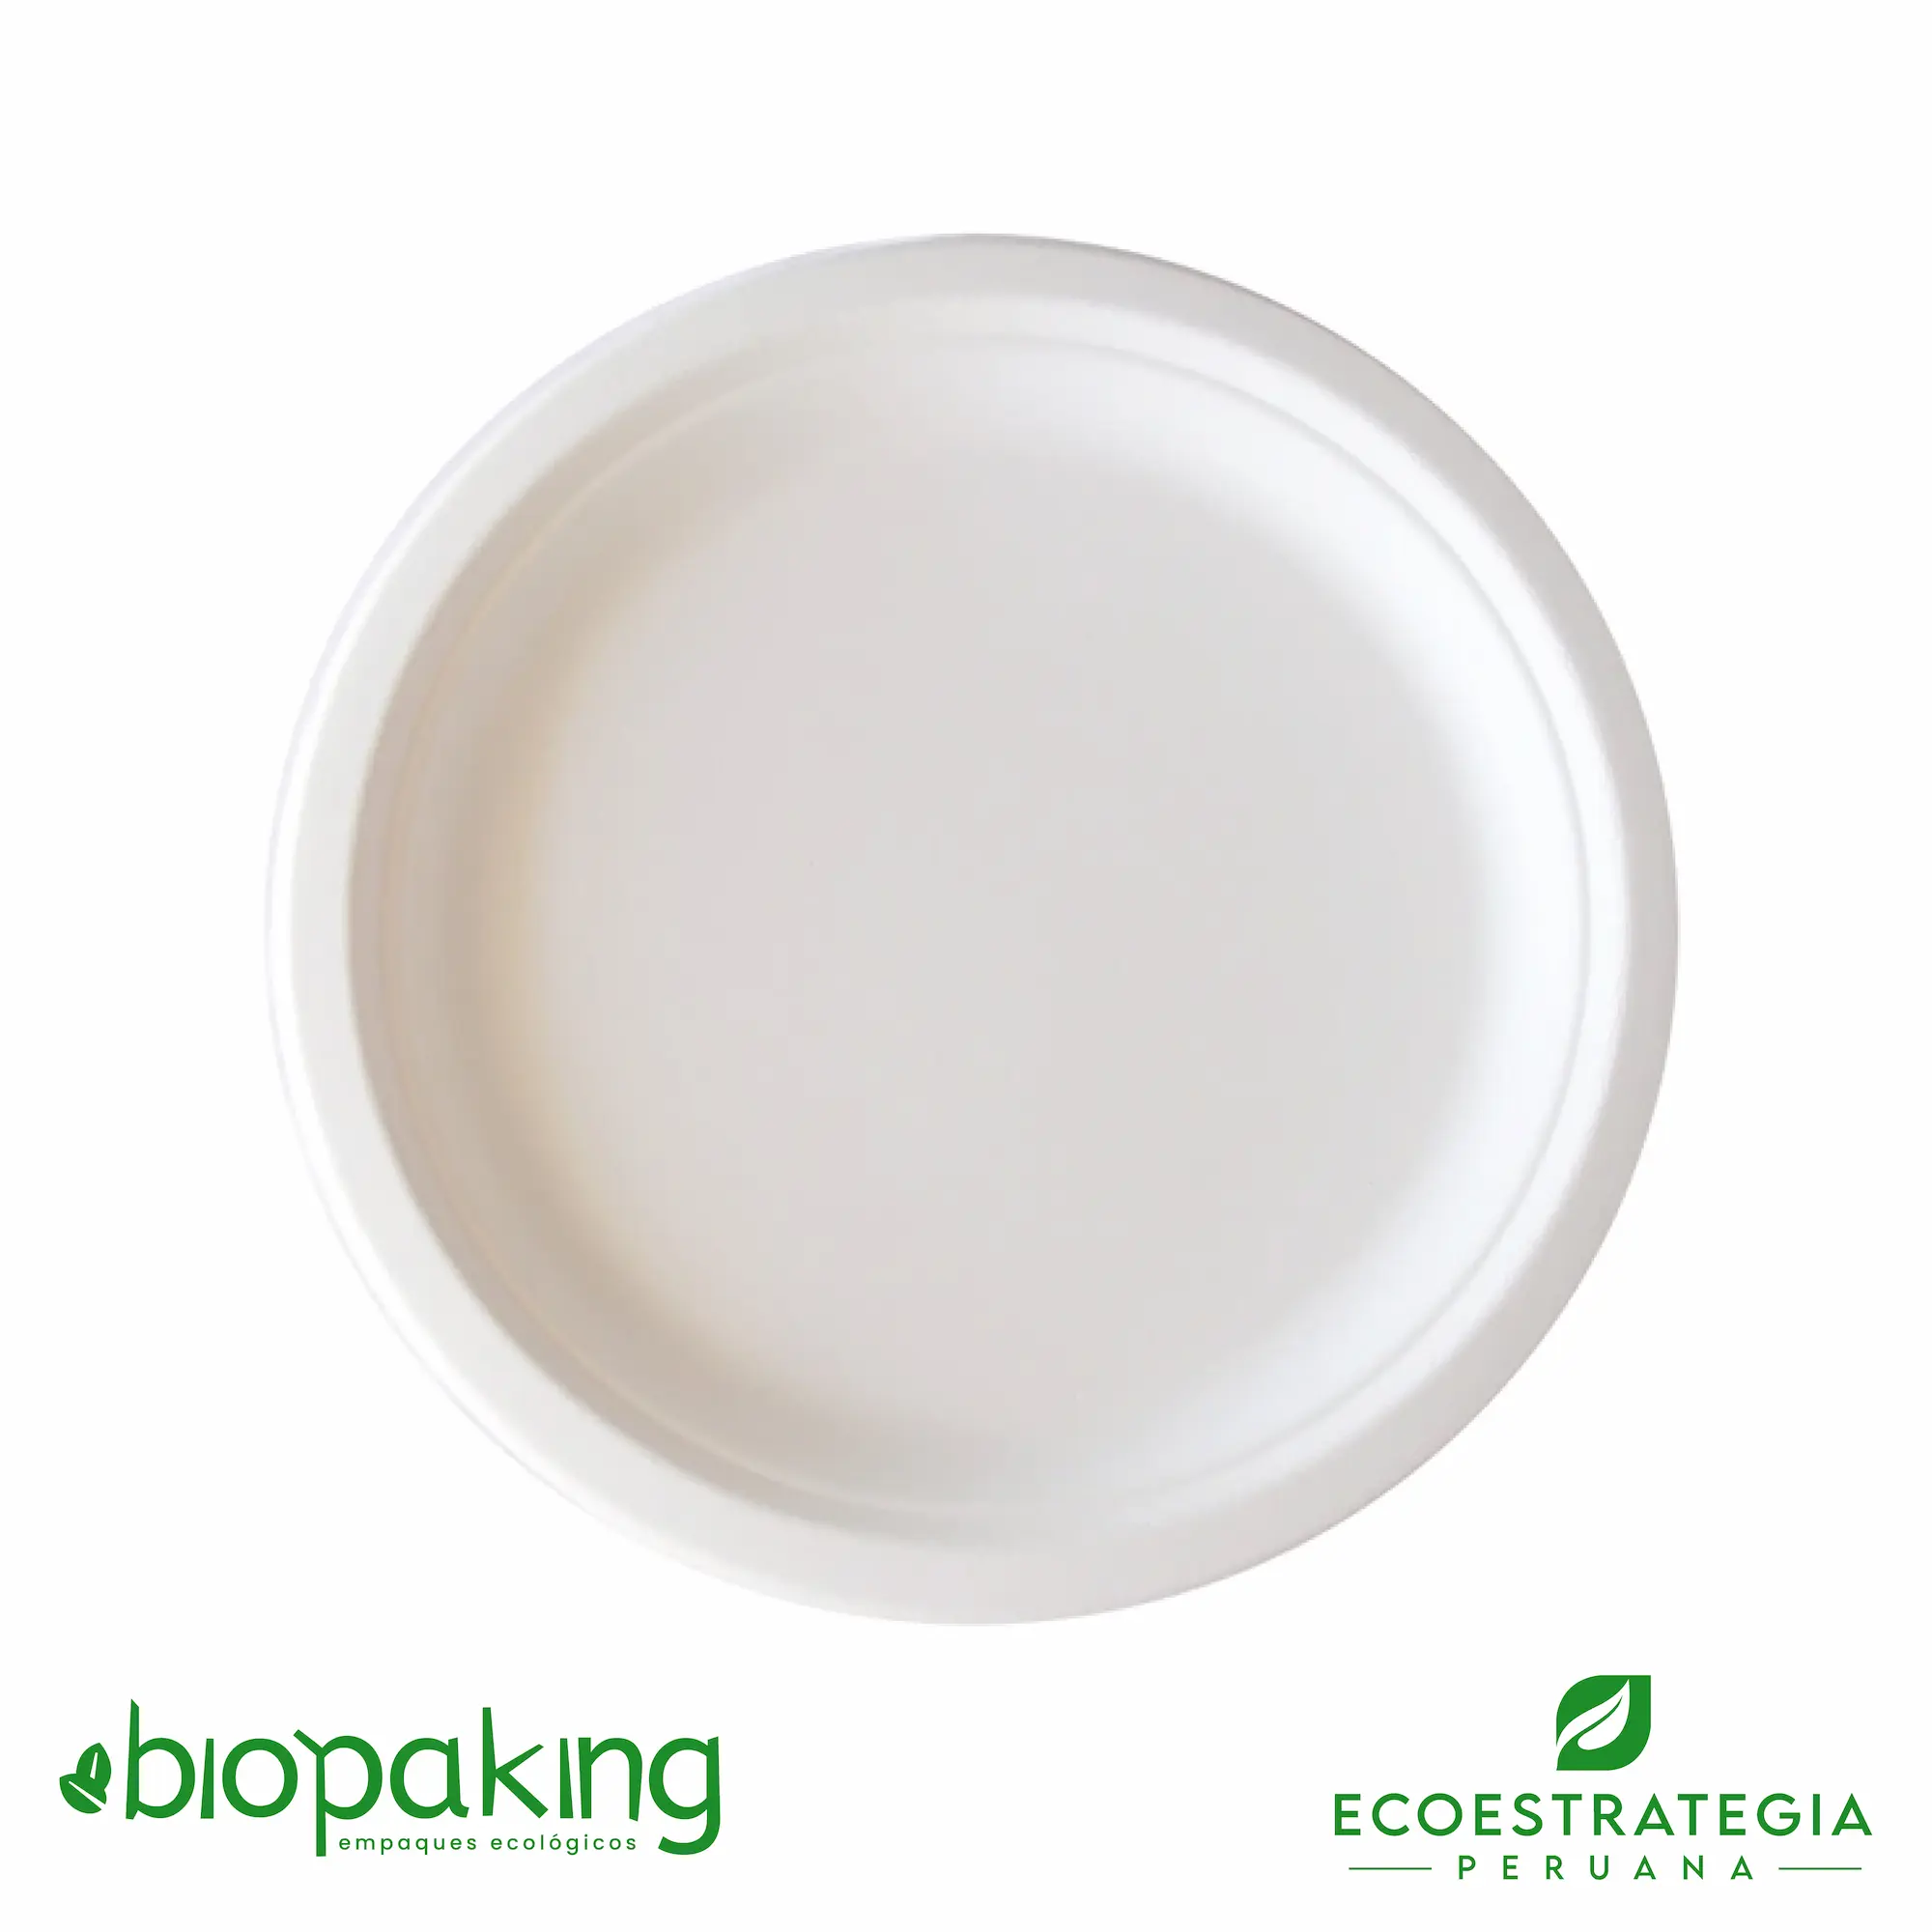 El plato biodegrable de 26cm EP-26 es también conocido como plato biodegradable número 26, plato biodegradable fibra, plato #26 biodegradable, plato eco 26 fibra de caña, plato biodegradable redondo 10”, plato degustación biodegradable, plato de fondo 26 cm, platos biodegradables 26, plato redondo chico 9”, plato 26 biodegradable, plato nº 26 bagazo de caña, plato 26 fibra, plato 26 bioform fibra-ks bagazo caña, plato postre biodegradable, plato biodegradable precio, platos biodegradable caseros, platos biodegradables al por mayor, platos biodegradables makro, platos biodegradables plaza vea, importadores de platos biodegradables 26, distribuidores de platos biodegradables 26, mayoristas de platos biodegradables 26, envases biodegadable, envase biodegadables, envase biodegradables perú, envase biodegrable peru, envase biodegradable de cartón blanco, envases biodegrables lima, envases biodegradables arequipa